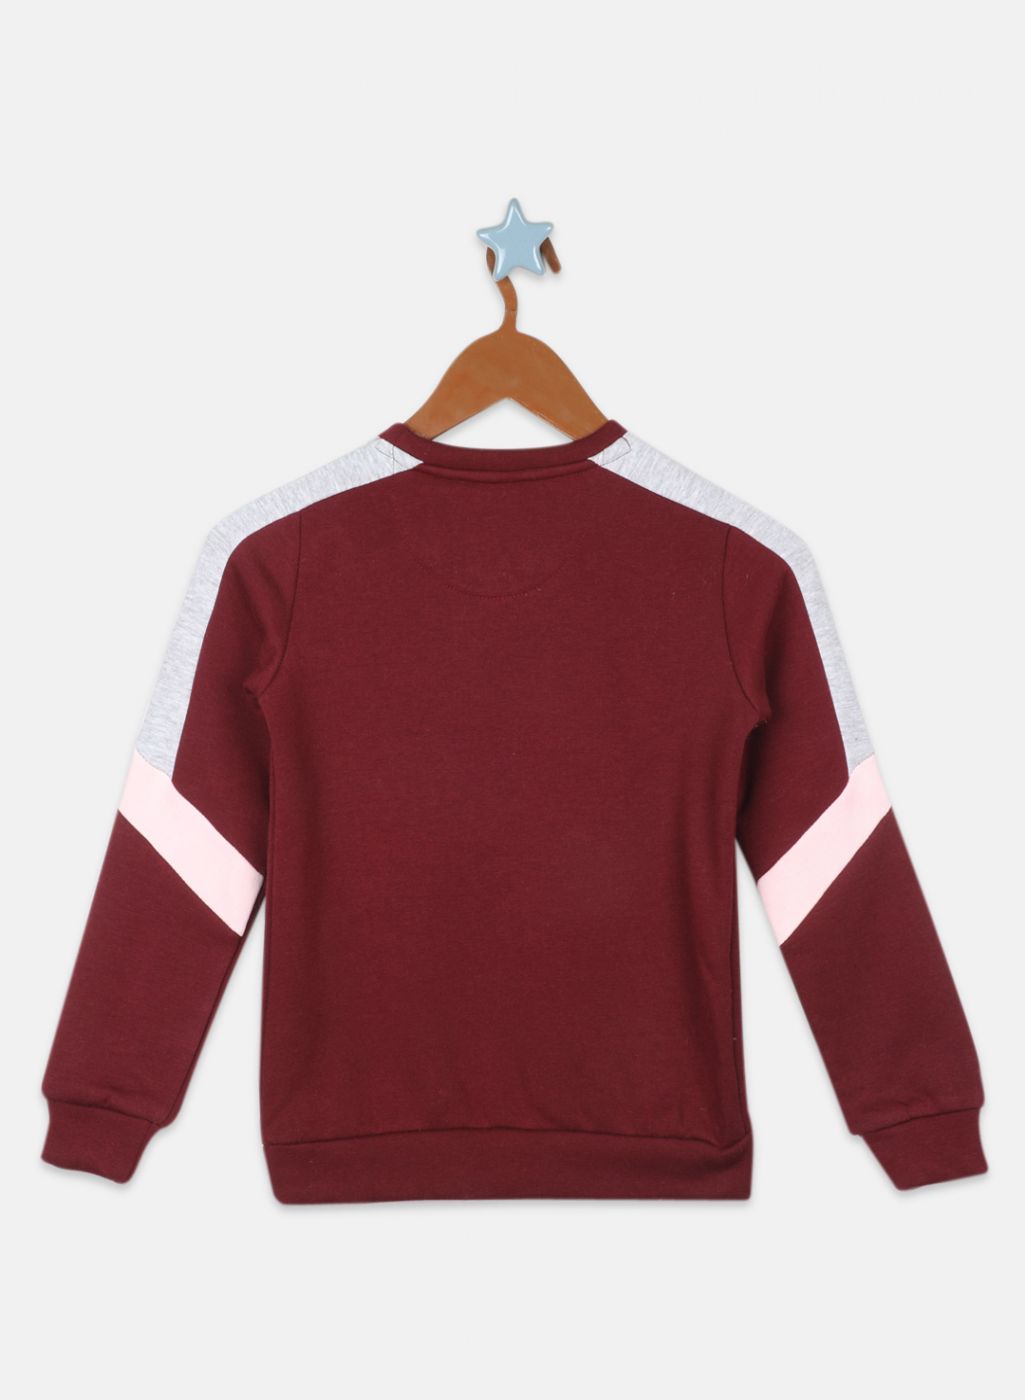 Girls Maroon Printed Sweatshirt